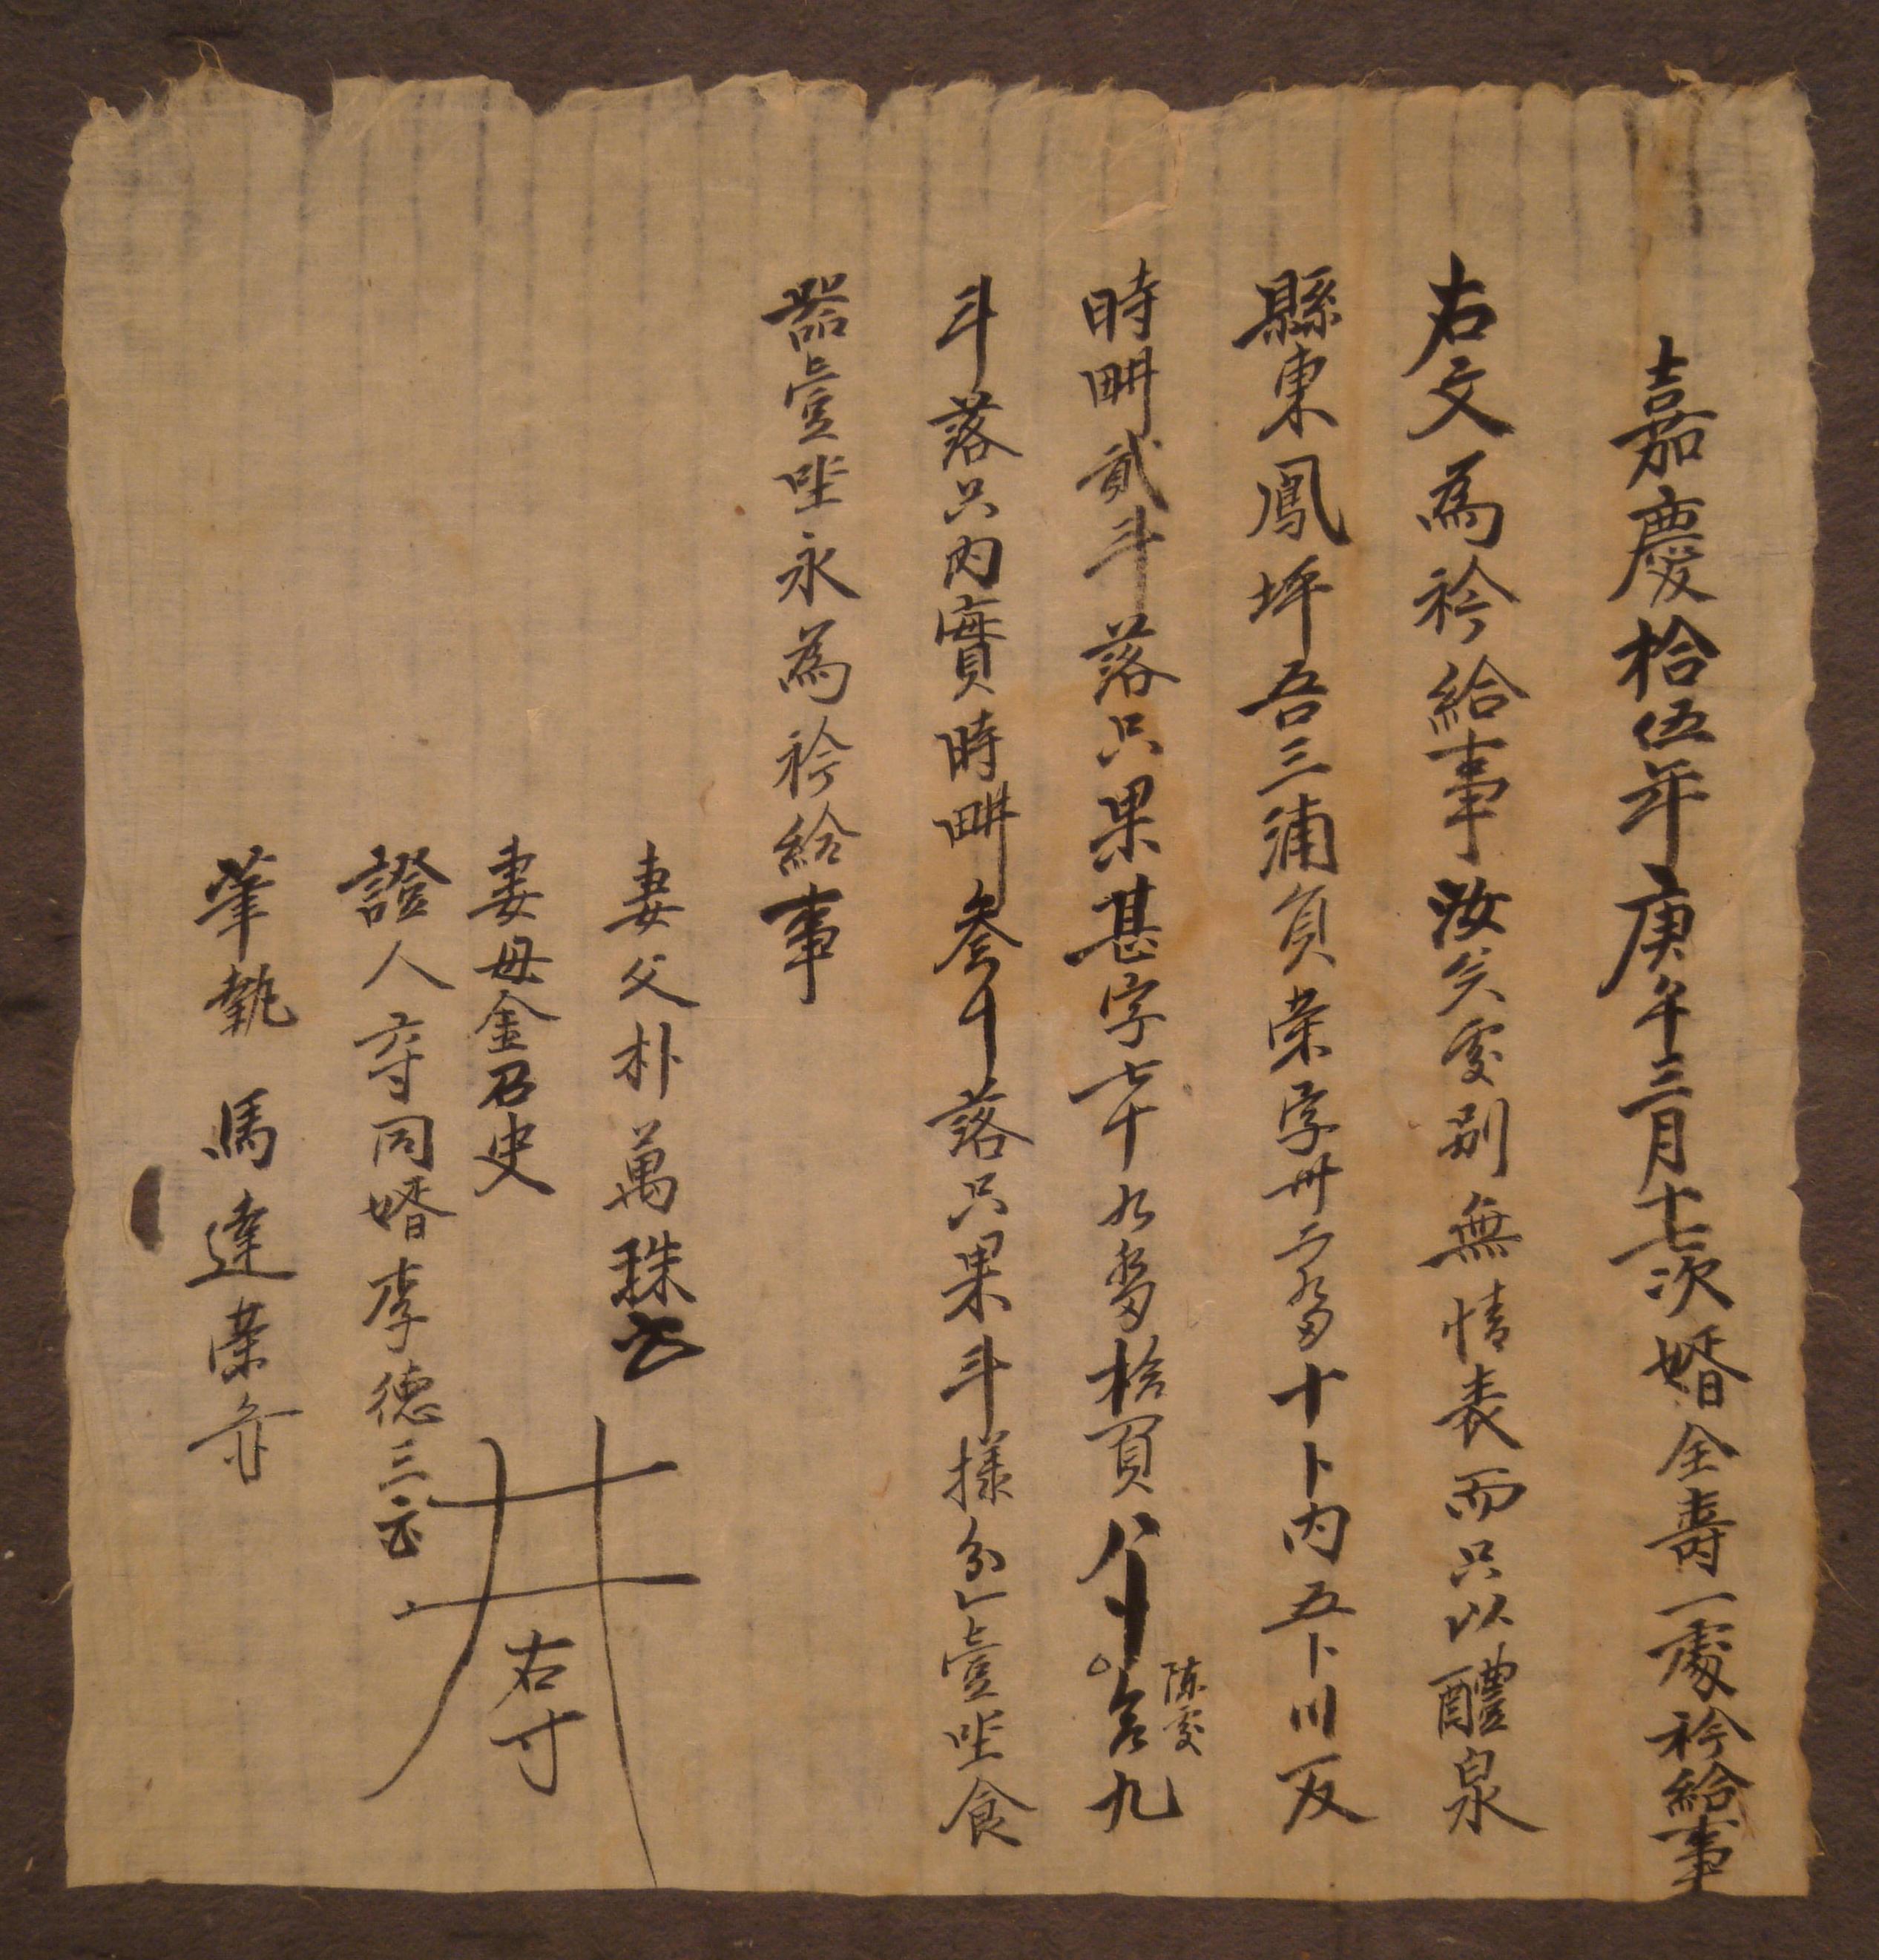 박만주(朴萬珠)가 1810년에 작성한 별급문기